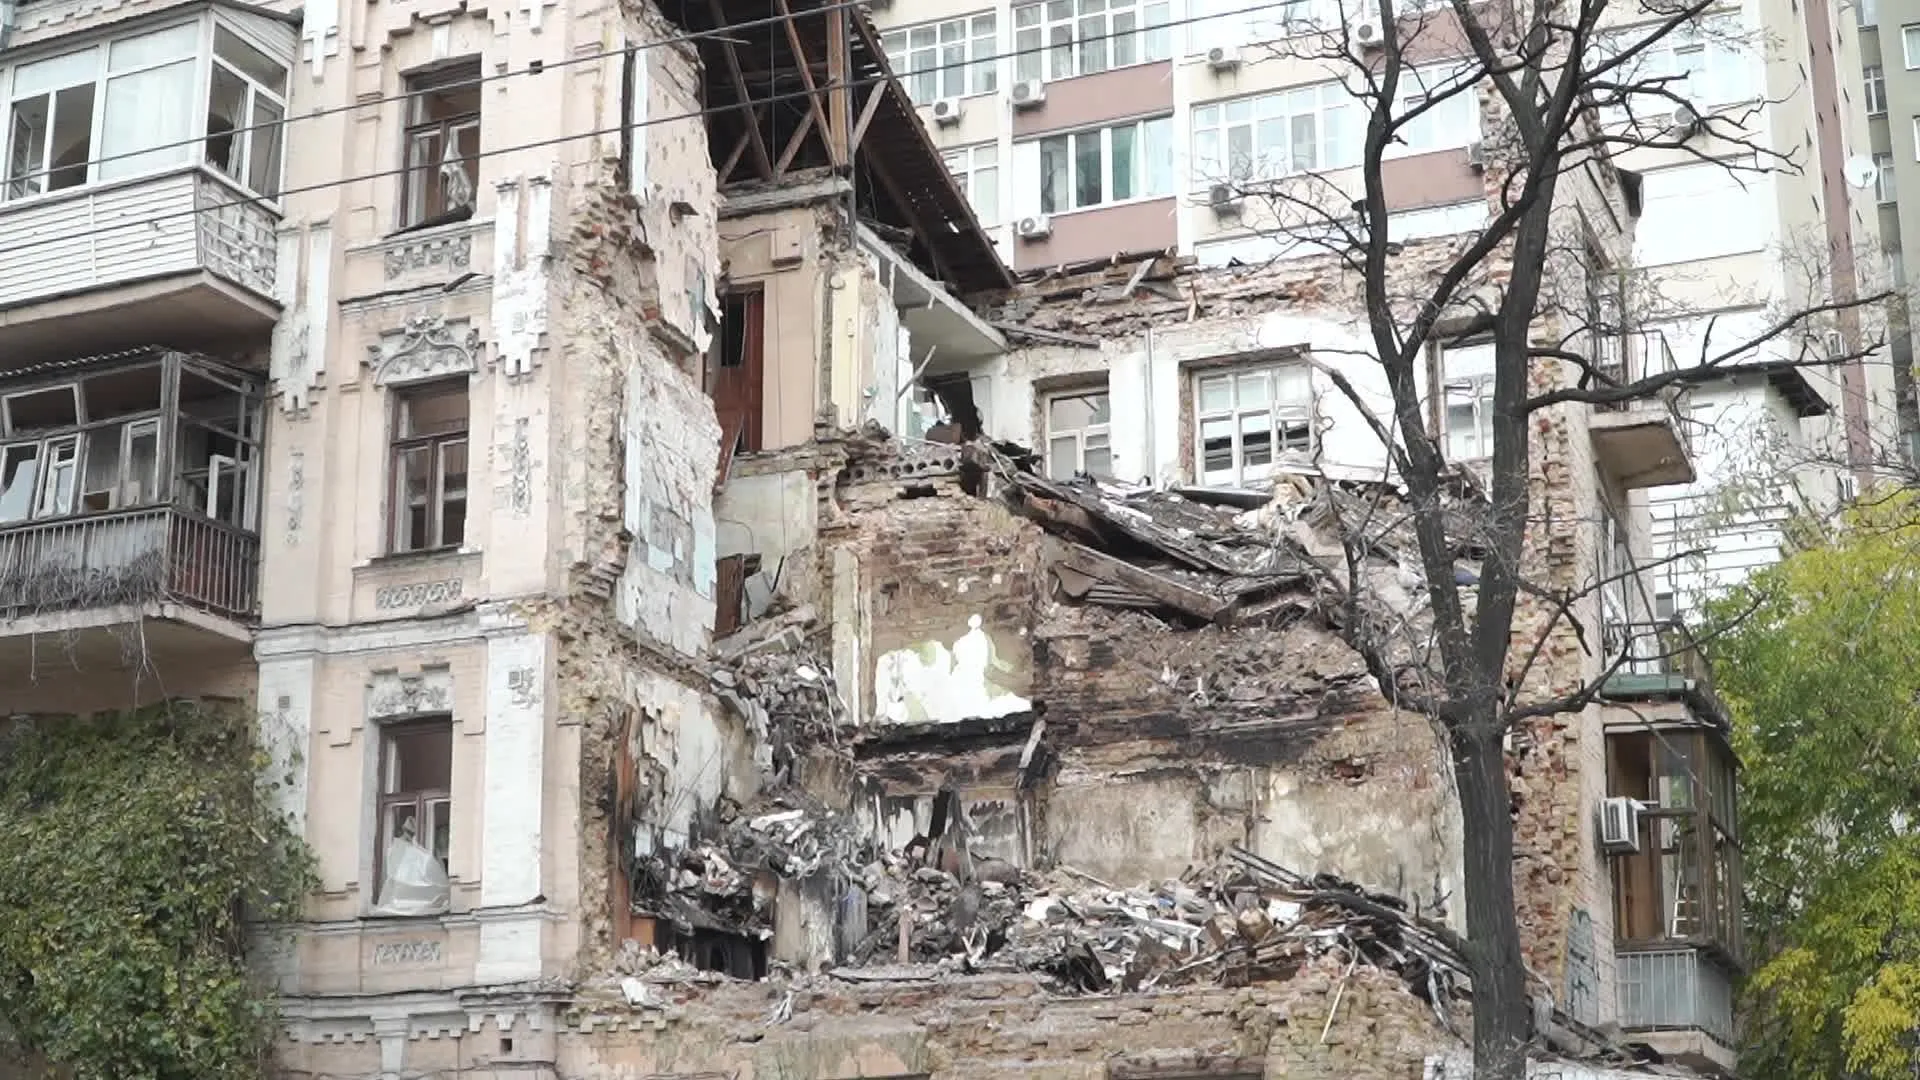 Kiev: between normality & war